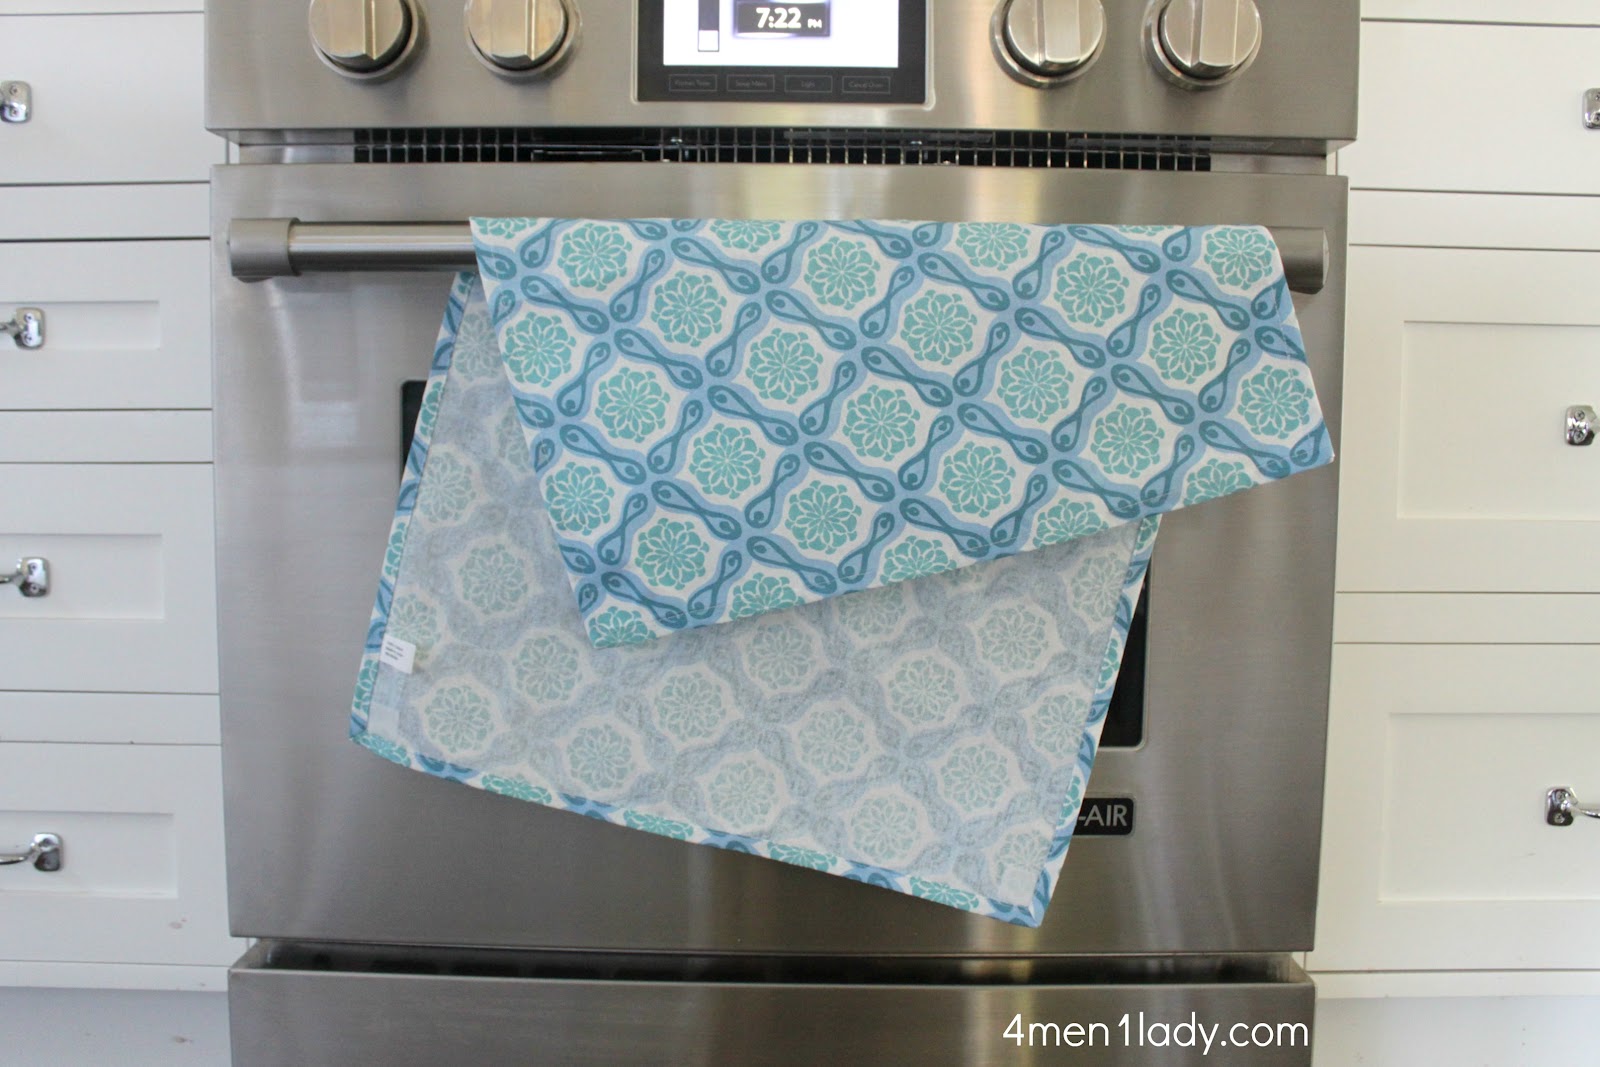 Oven Door Towel, Kitchen Hanging Dish Bathroom Hand Towel With